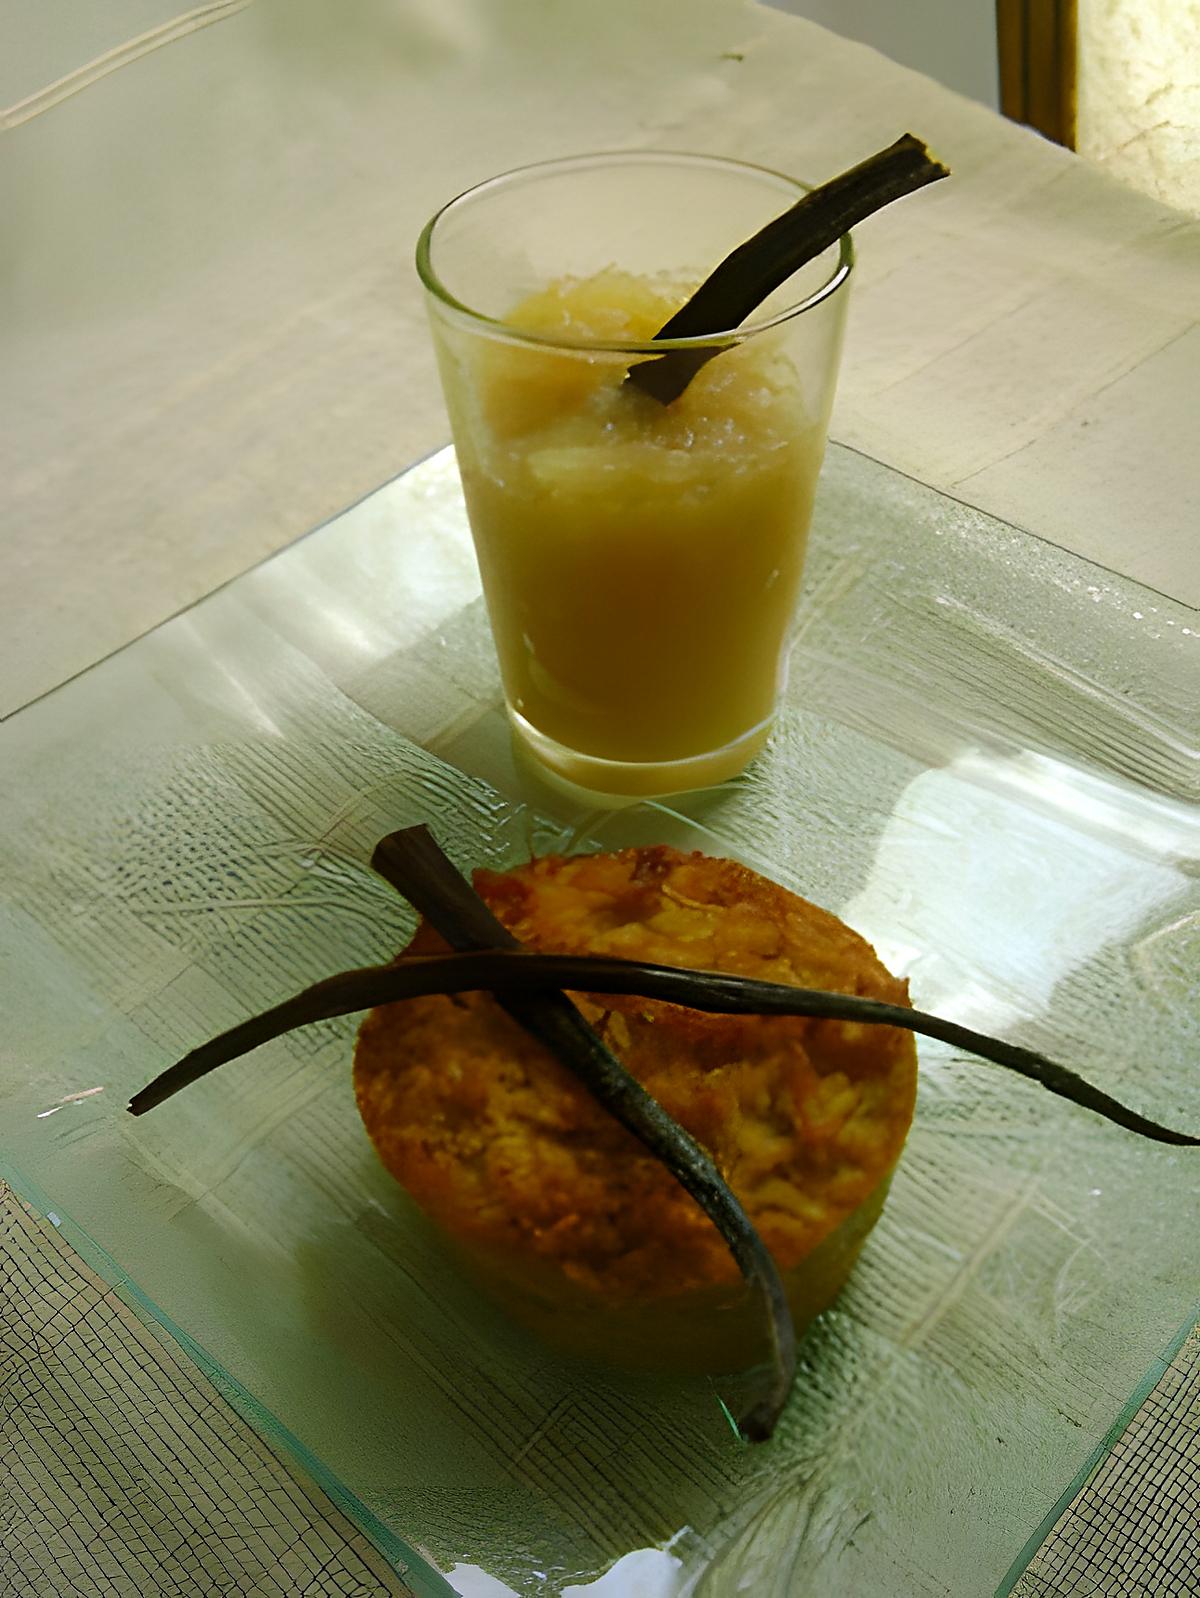 recette Gateau manioc-coco et compote pomme-canelle vanillée